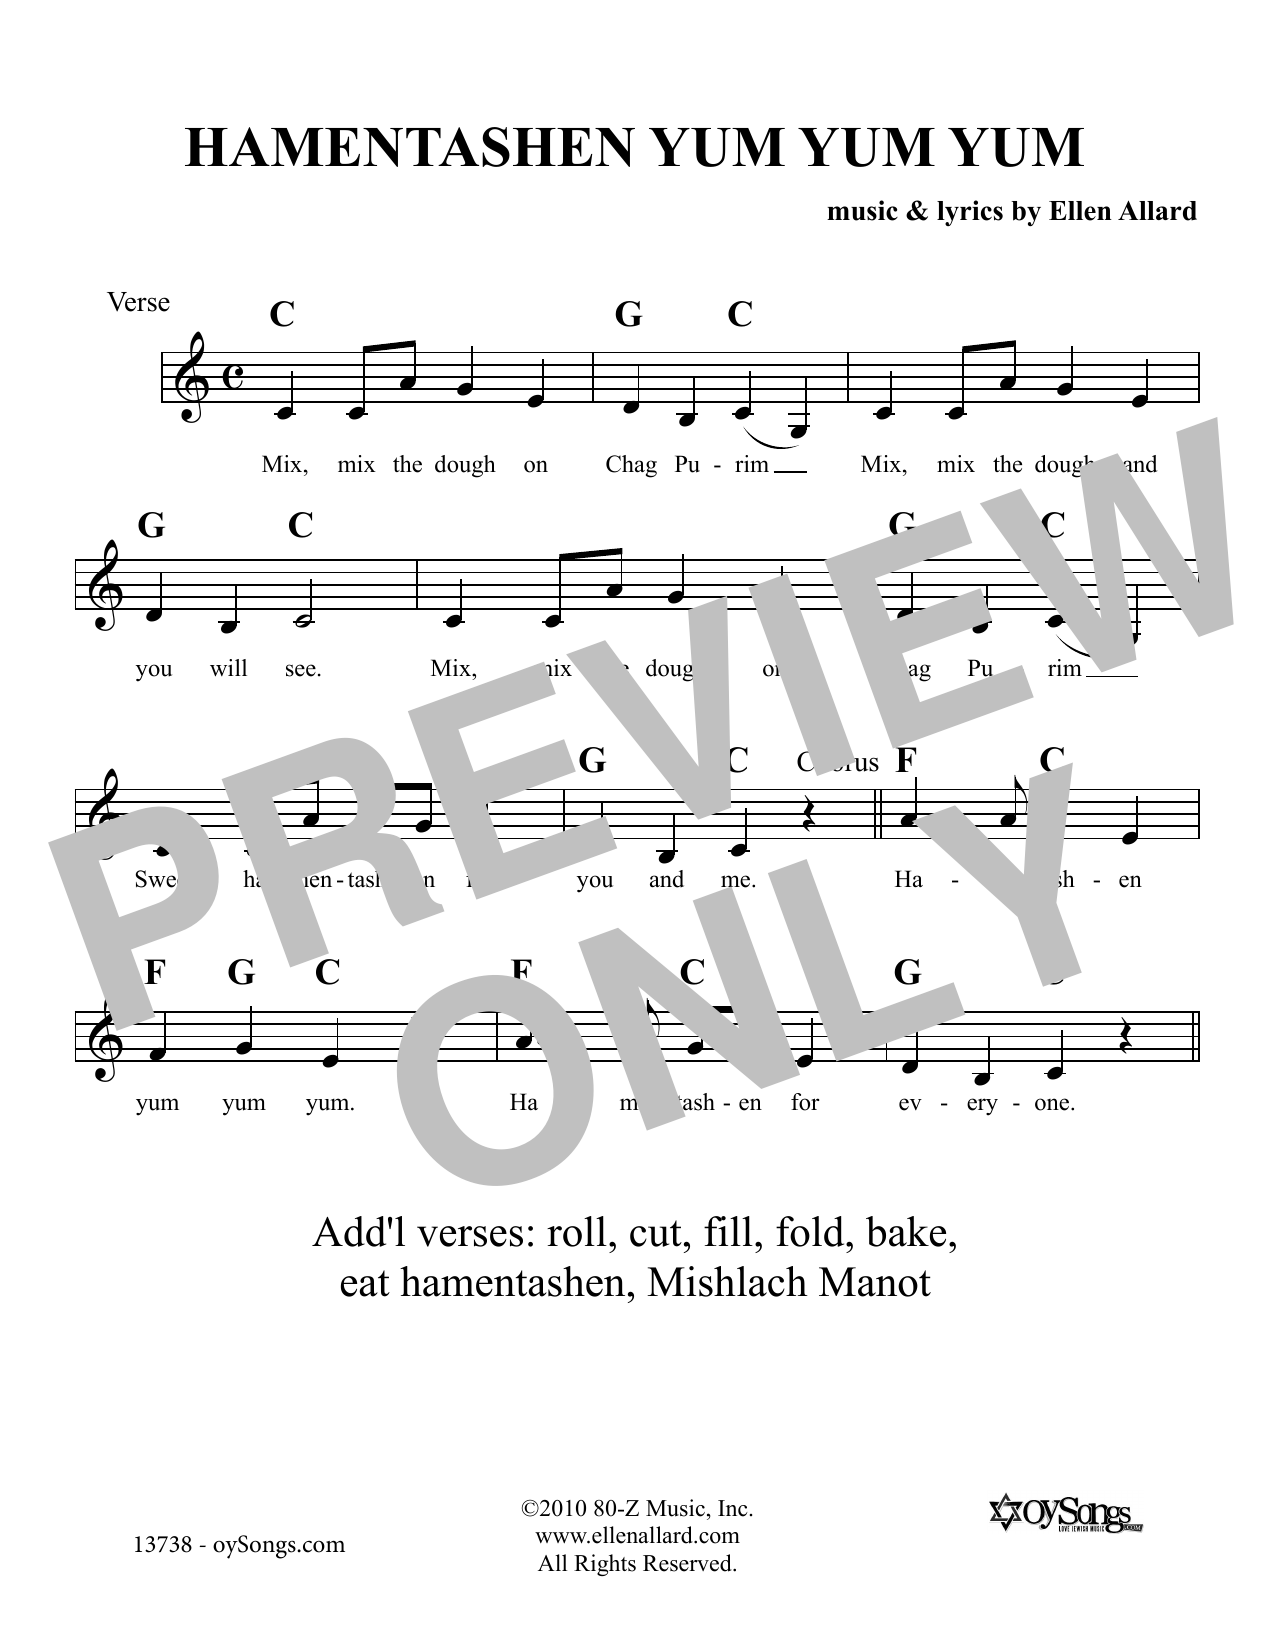 Ellen Allard Hamentashen Yum Yum Yum sheet music notes and chords arranged for Lead Sheet / Fake Book